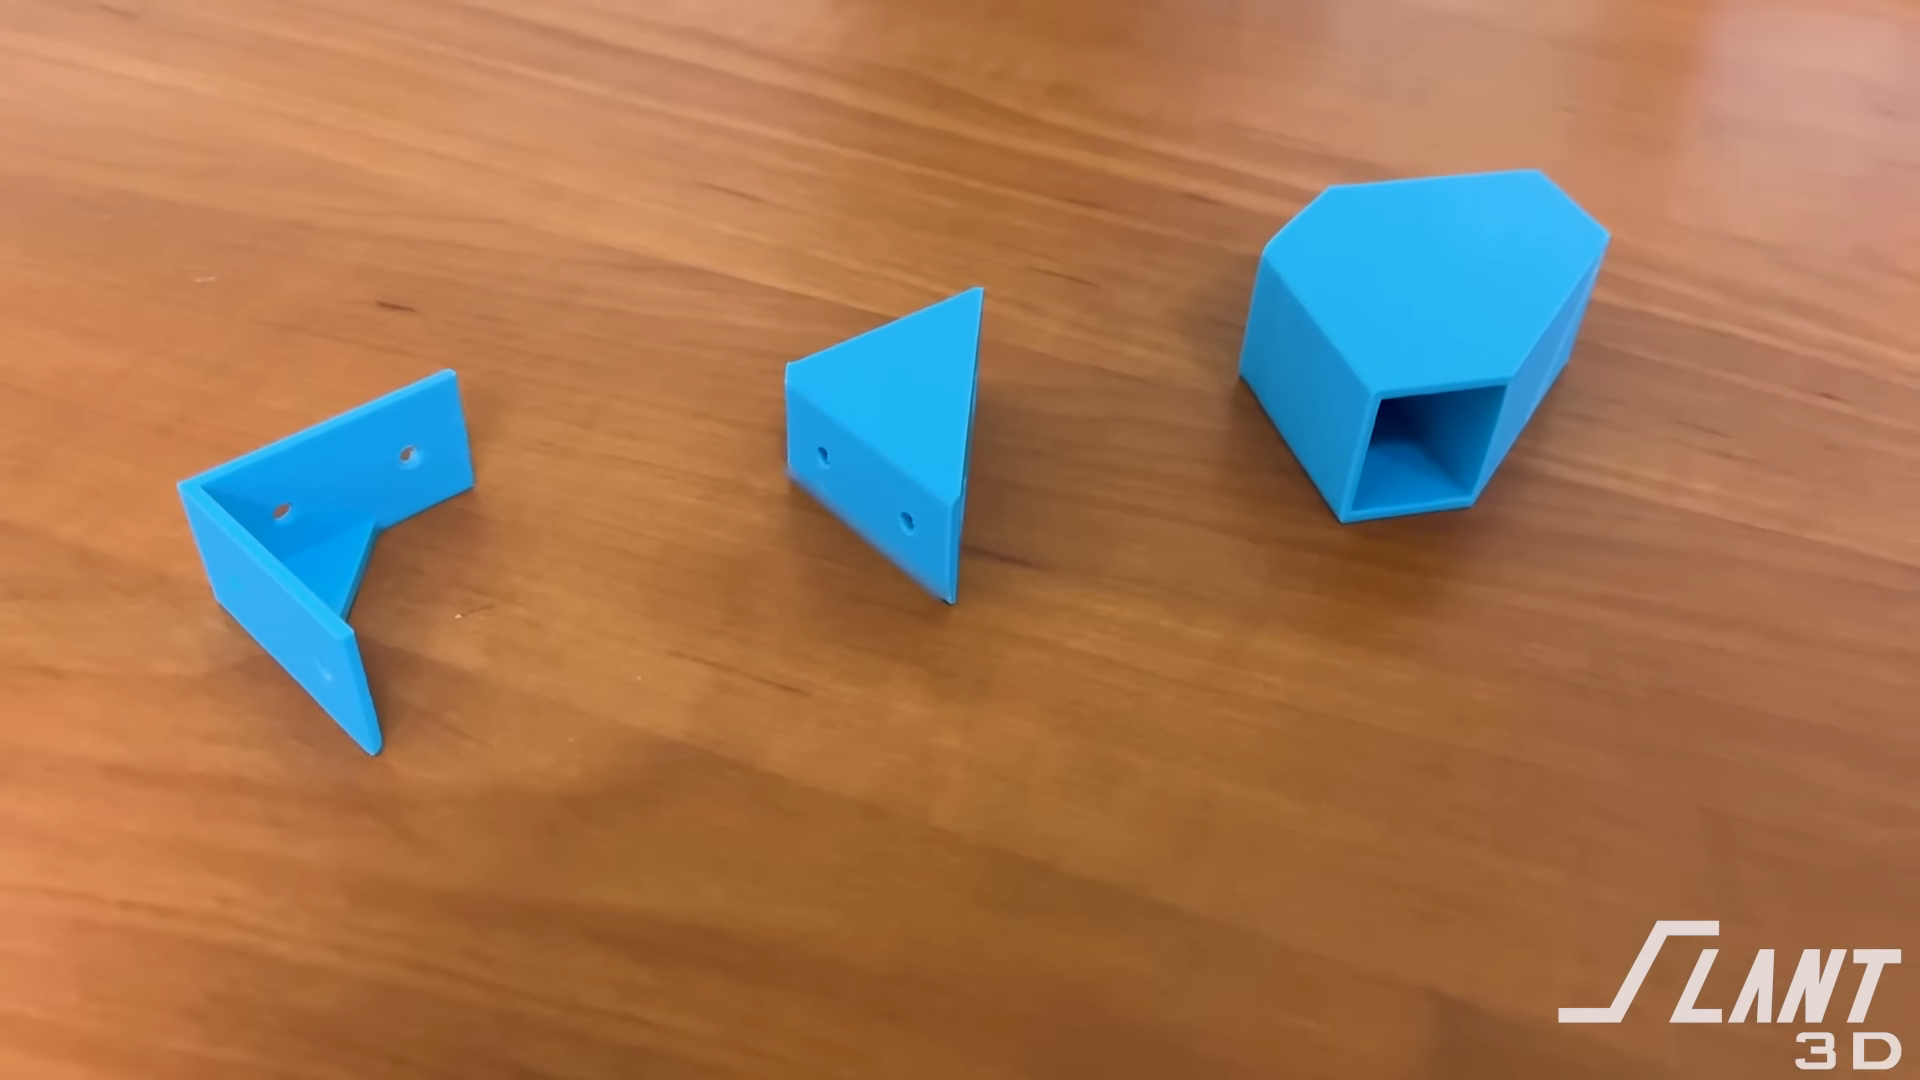 3D Printed Measuring Cube  3d printer designs, 3d printing art